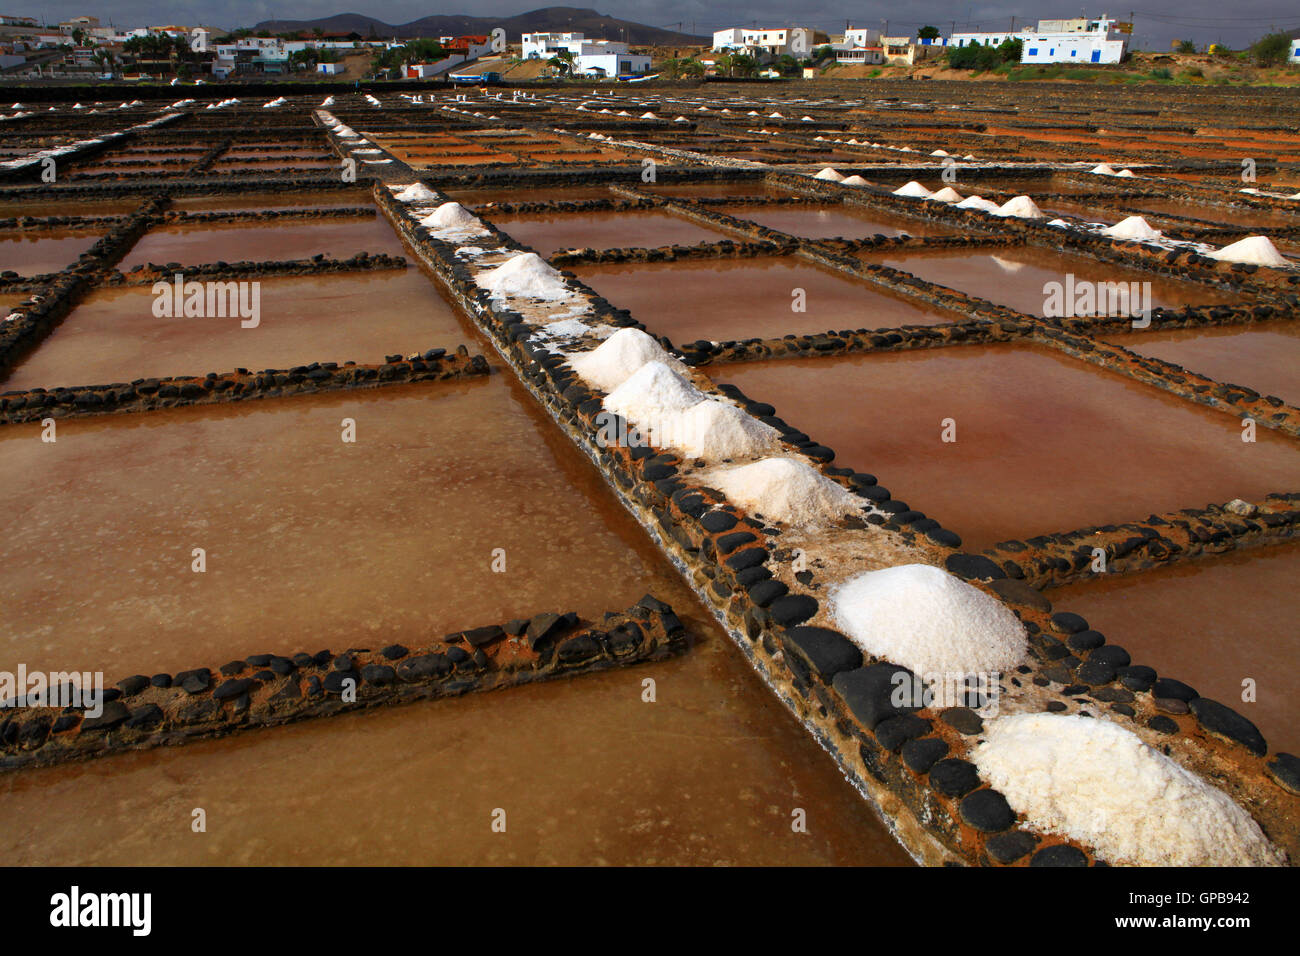 Los métodos tradicionales de producción de sal. Salinas del Carmen, Fuerteventura Foto de stock